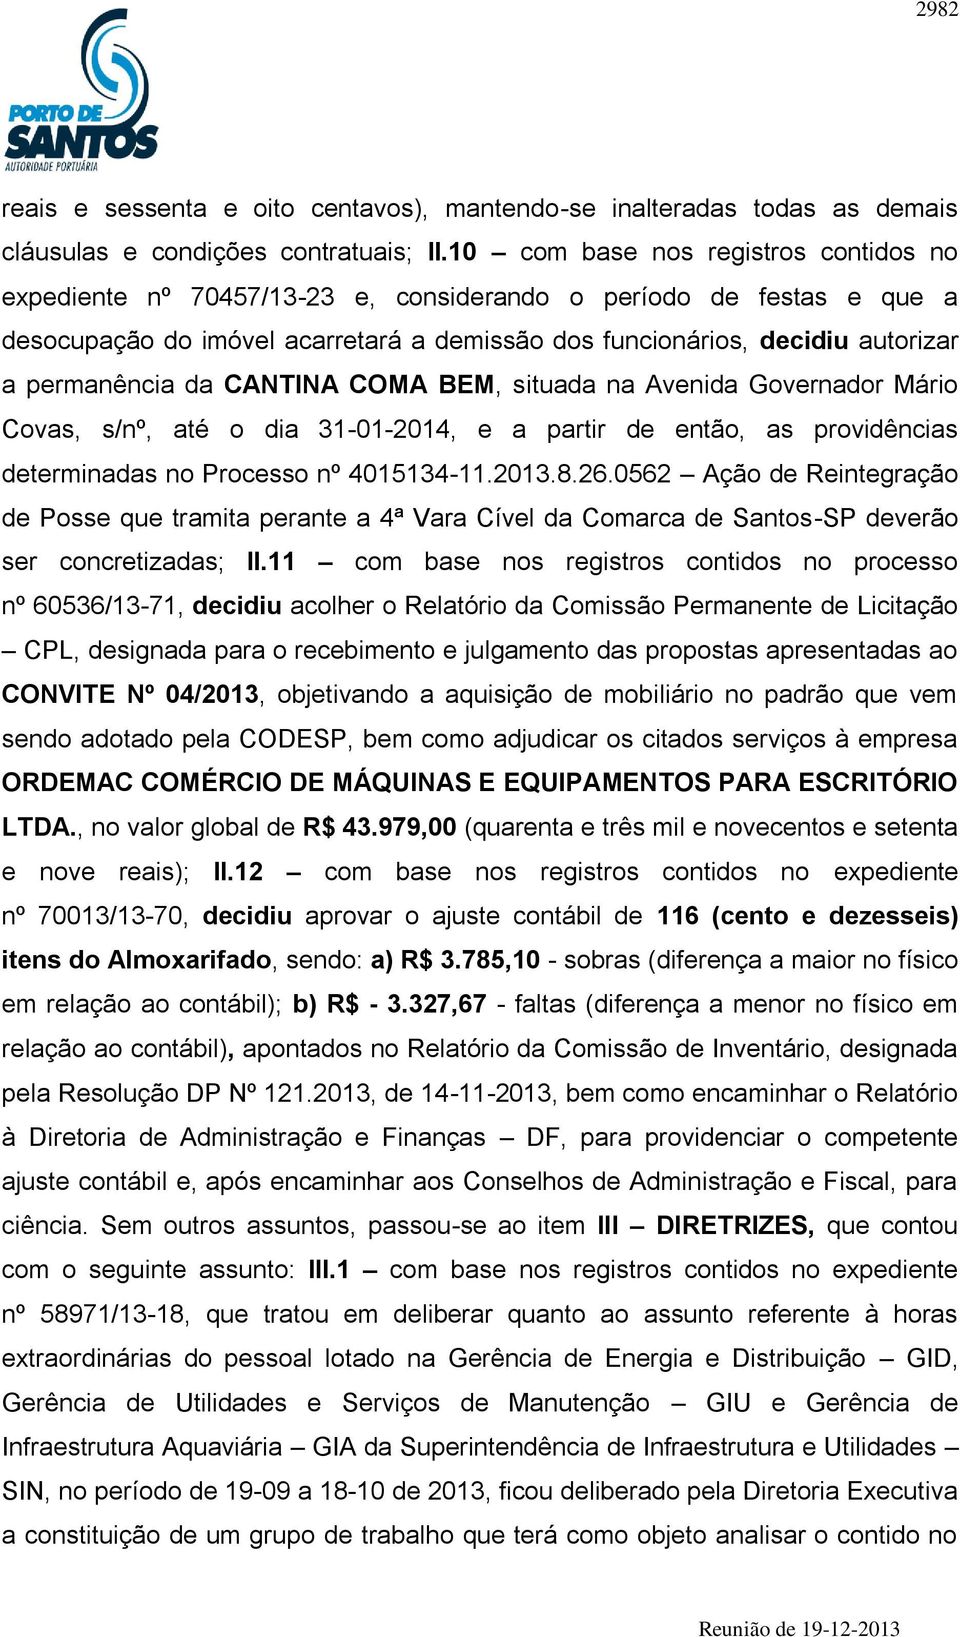 permanência da CANTINA COMA BEM, situada na Avenida Governador Mário Covas, s/nº, até o dia 31-01-2014, e a partir de então, as providências determinadas no Processo nº 4015134-11.2013.8.26.